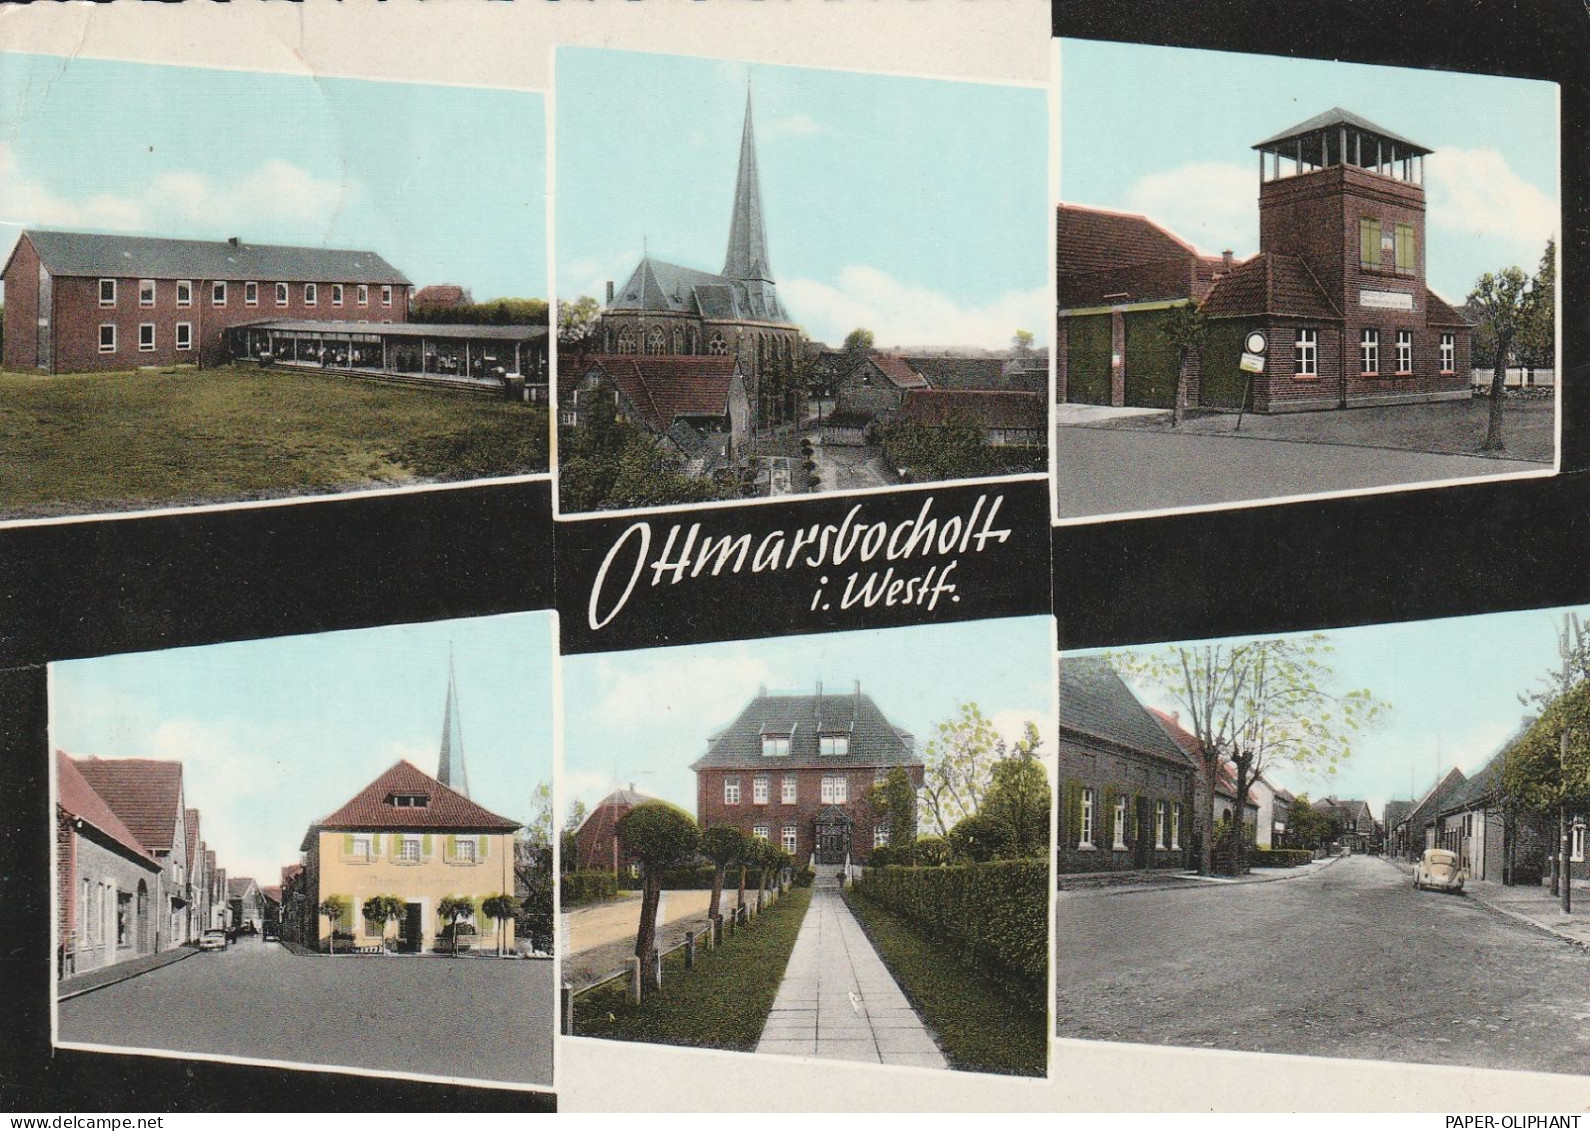 4403 SENDEN - OTTMARSBOCHOLT, Ortsansichten, Kirche, SDchule.... - Coesfeld